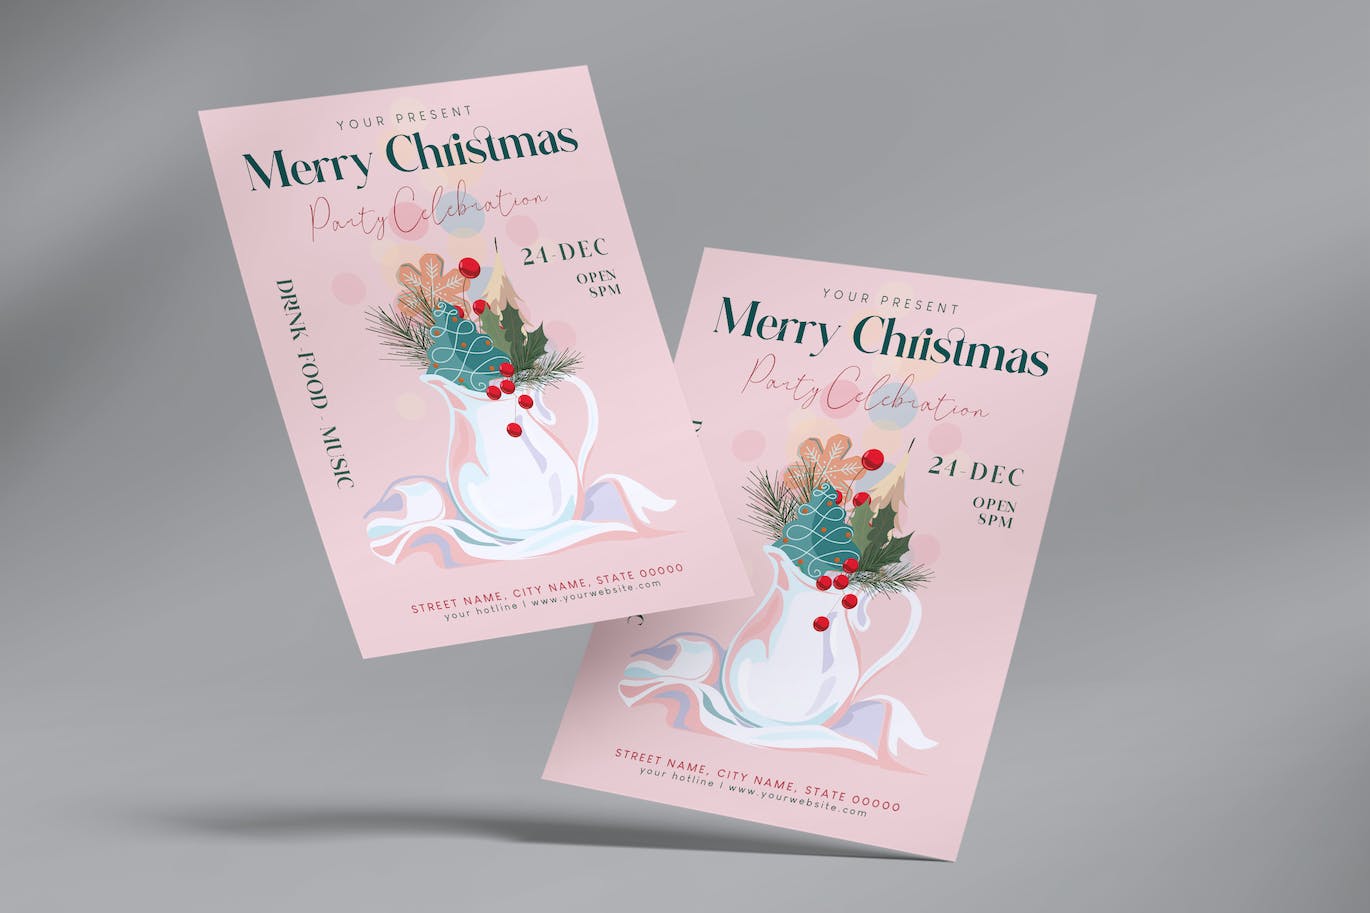 圣诞节庆祝海报传单设计素材 (AI,EPS,JPG,PNG)